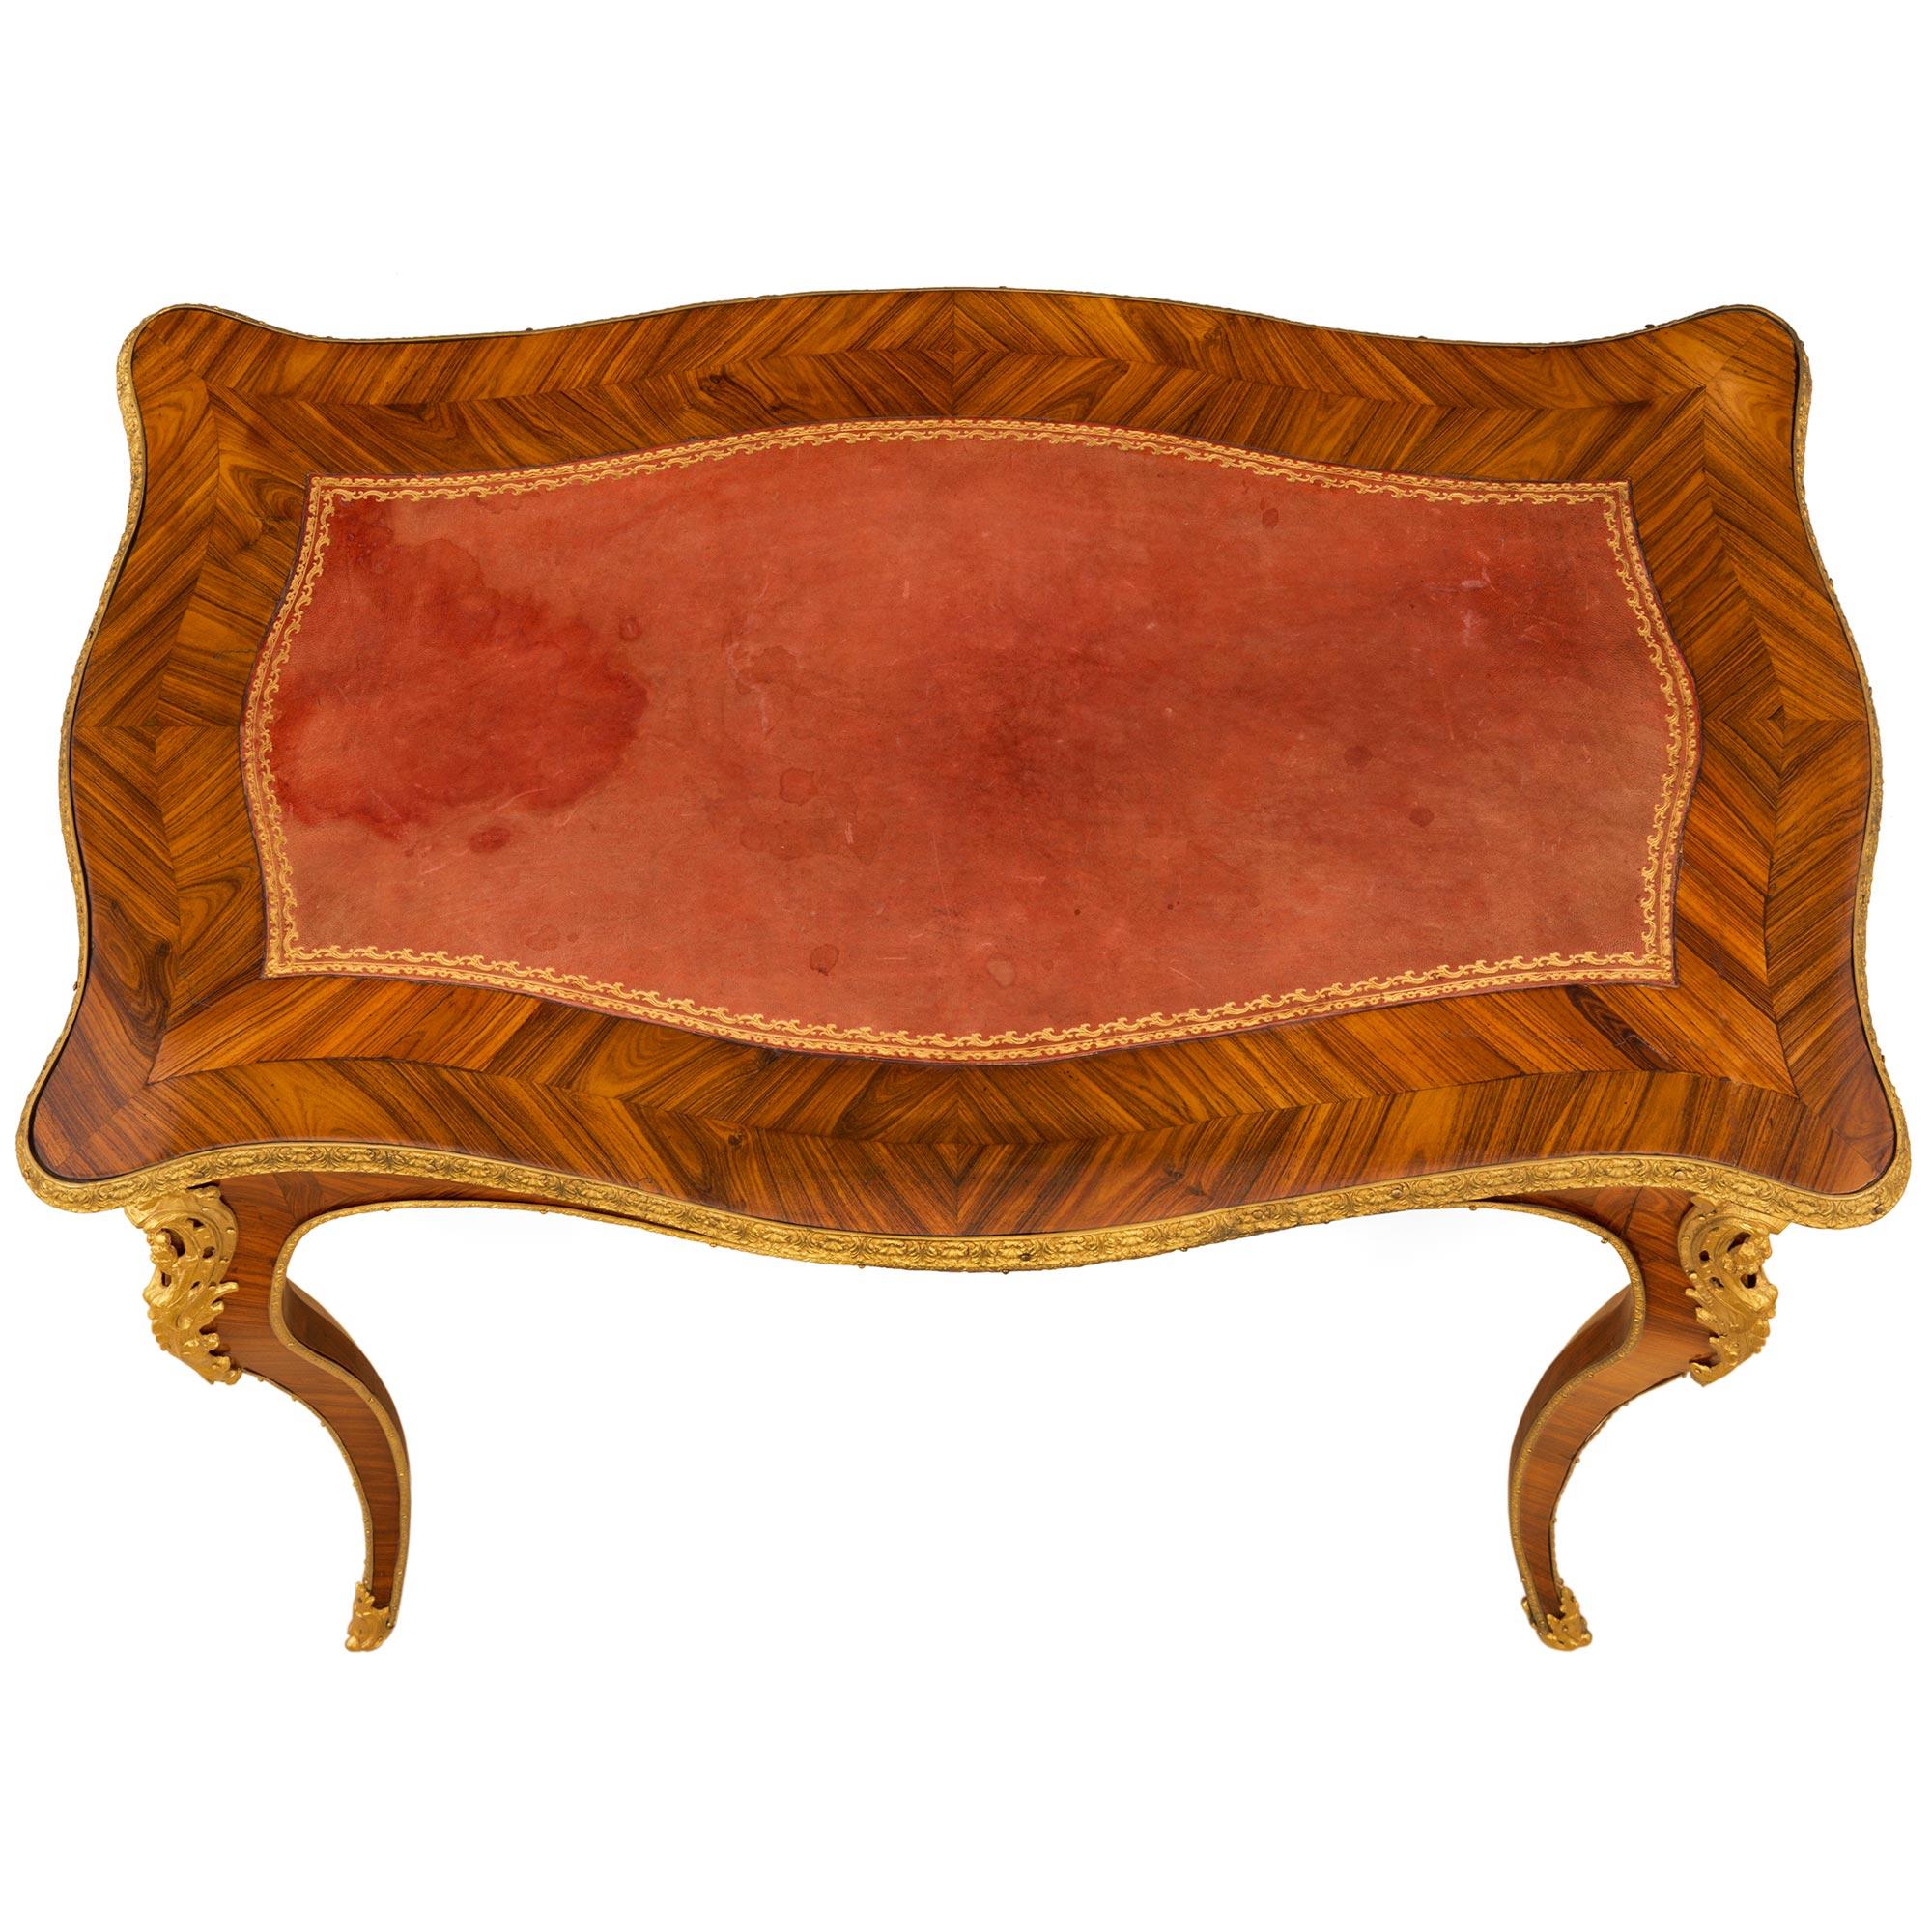 Ein äußerst eleganter und hochwertiger französischer Beistelltisch aus Tulipholz und Ormolu des 19. Jahrhunderts im Stil Louis XV. Der Tisch steht auf schlanken, elegant geschwungenen, konisch zulaufenden Beinen, die in fein gearbeiteten, foliierten